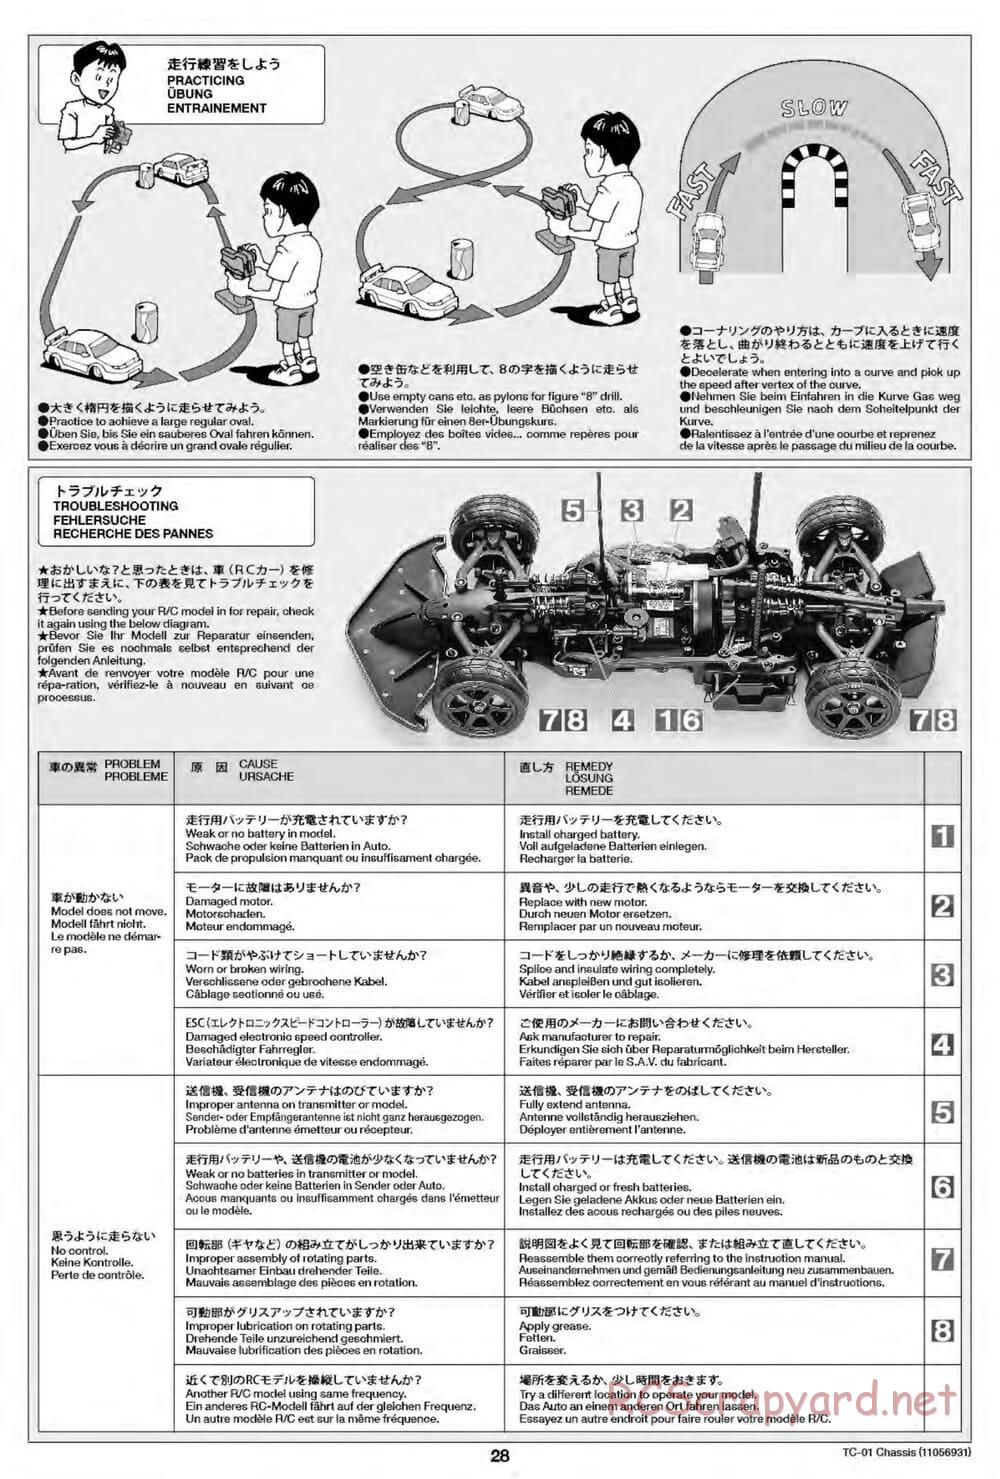 Tamiya - TC-01 Chassis - Manual - Page 28